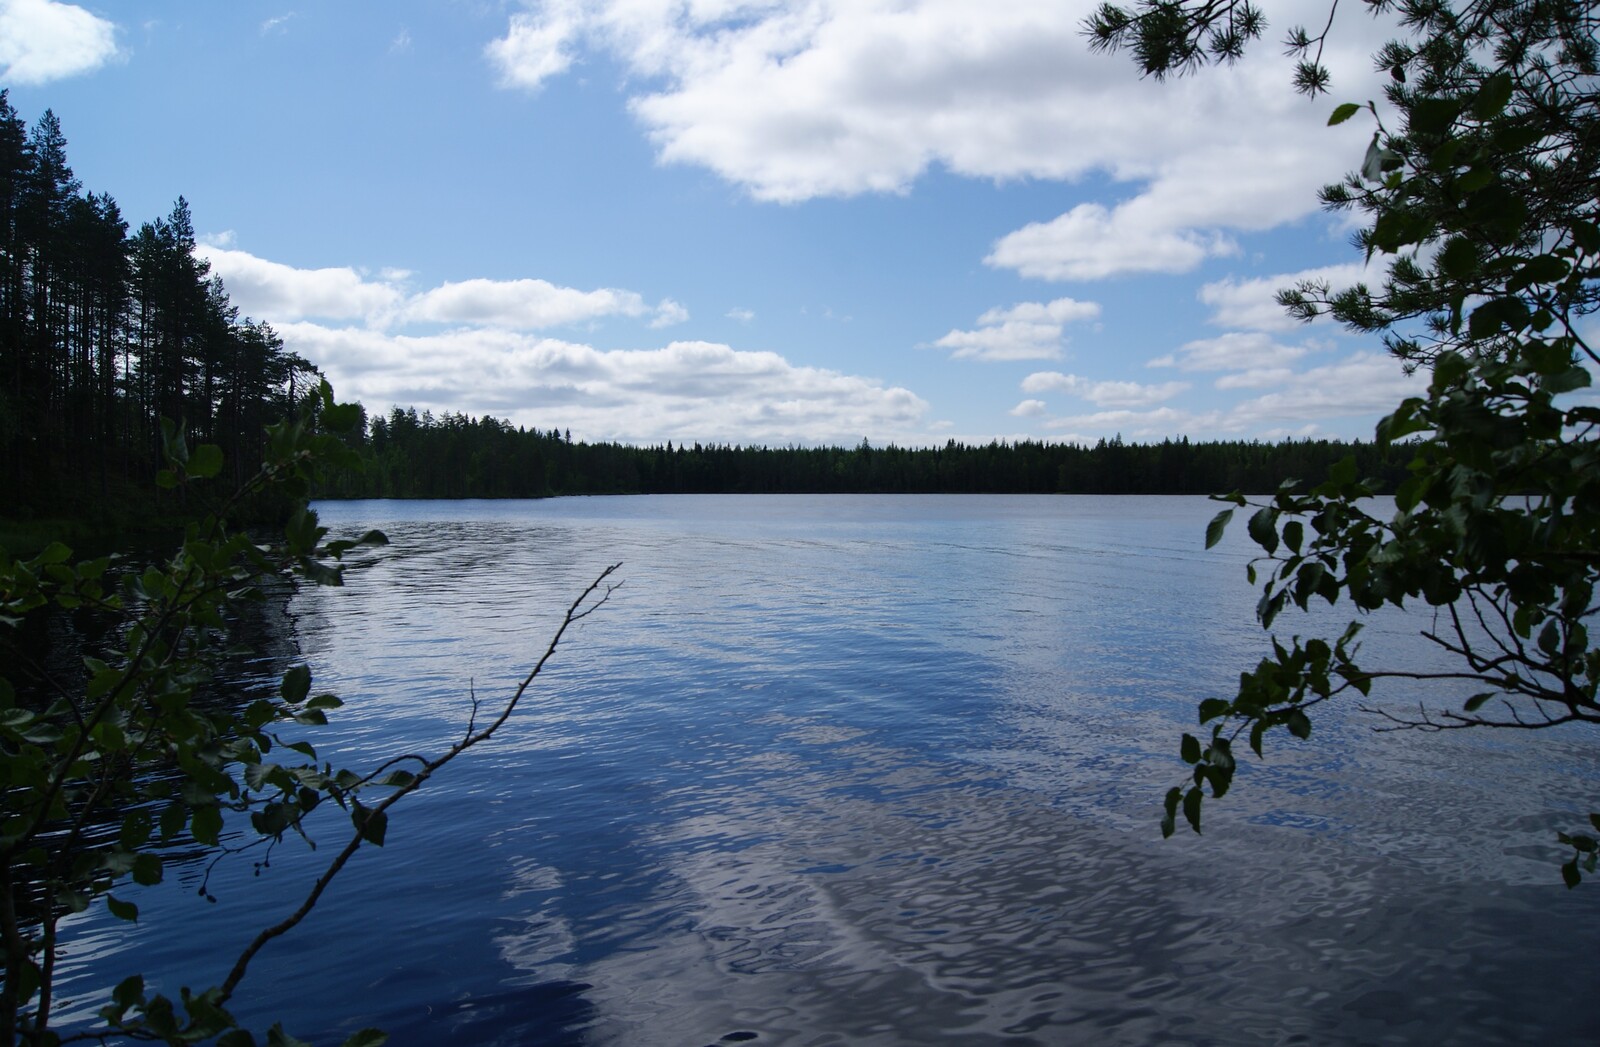 Lehtipuiden oksat reunustavat kesäistä järvimaisemaa. Puolipilvinen taivas heijastuu veteen.